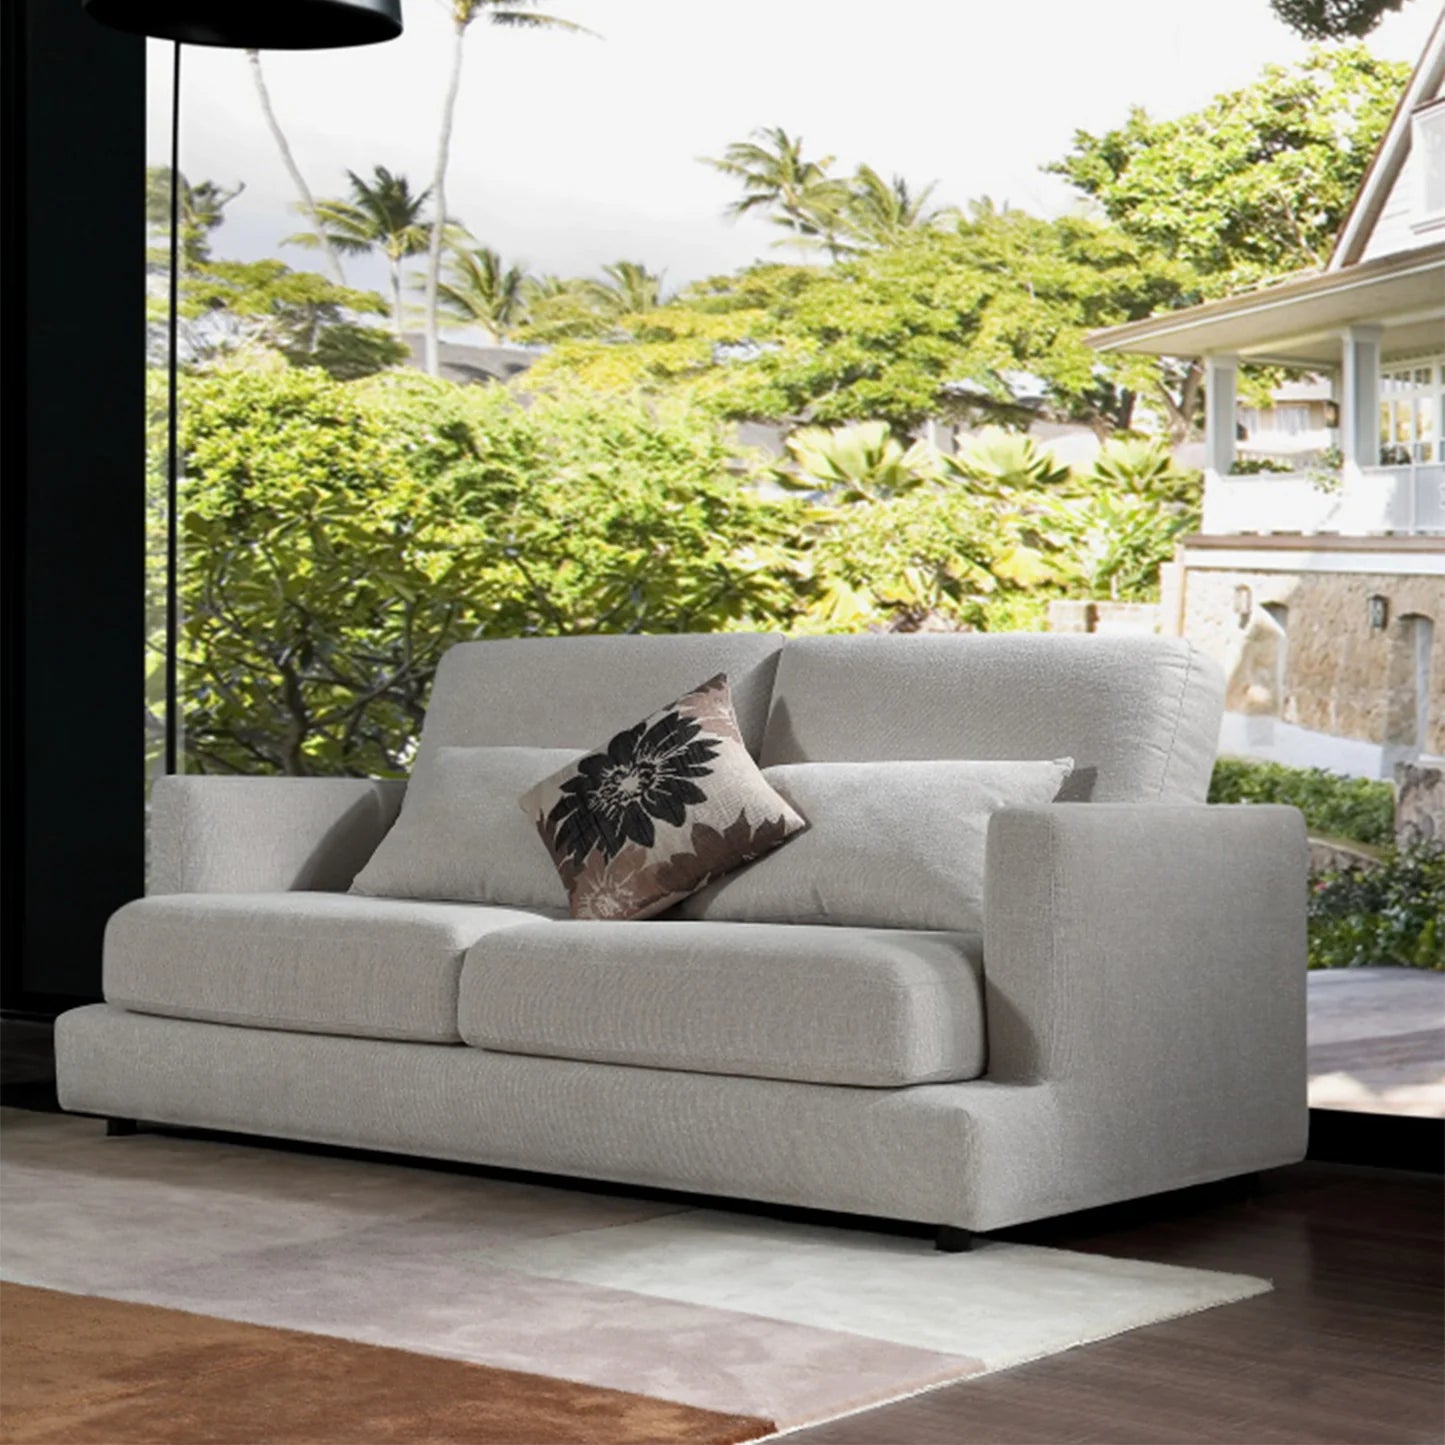 DeRUCCI Greige High-Quality Sofa